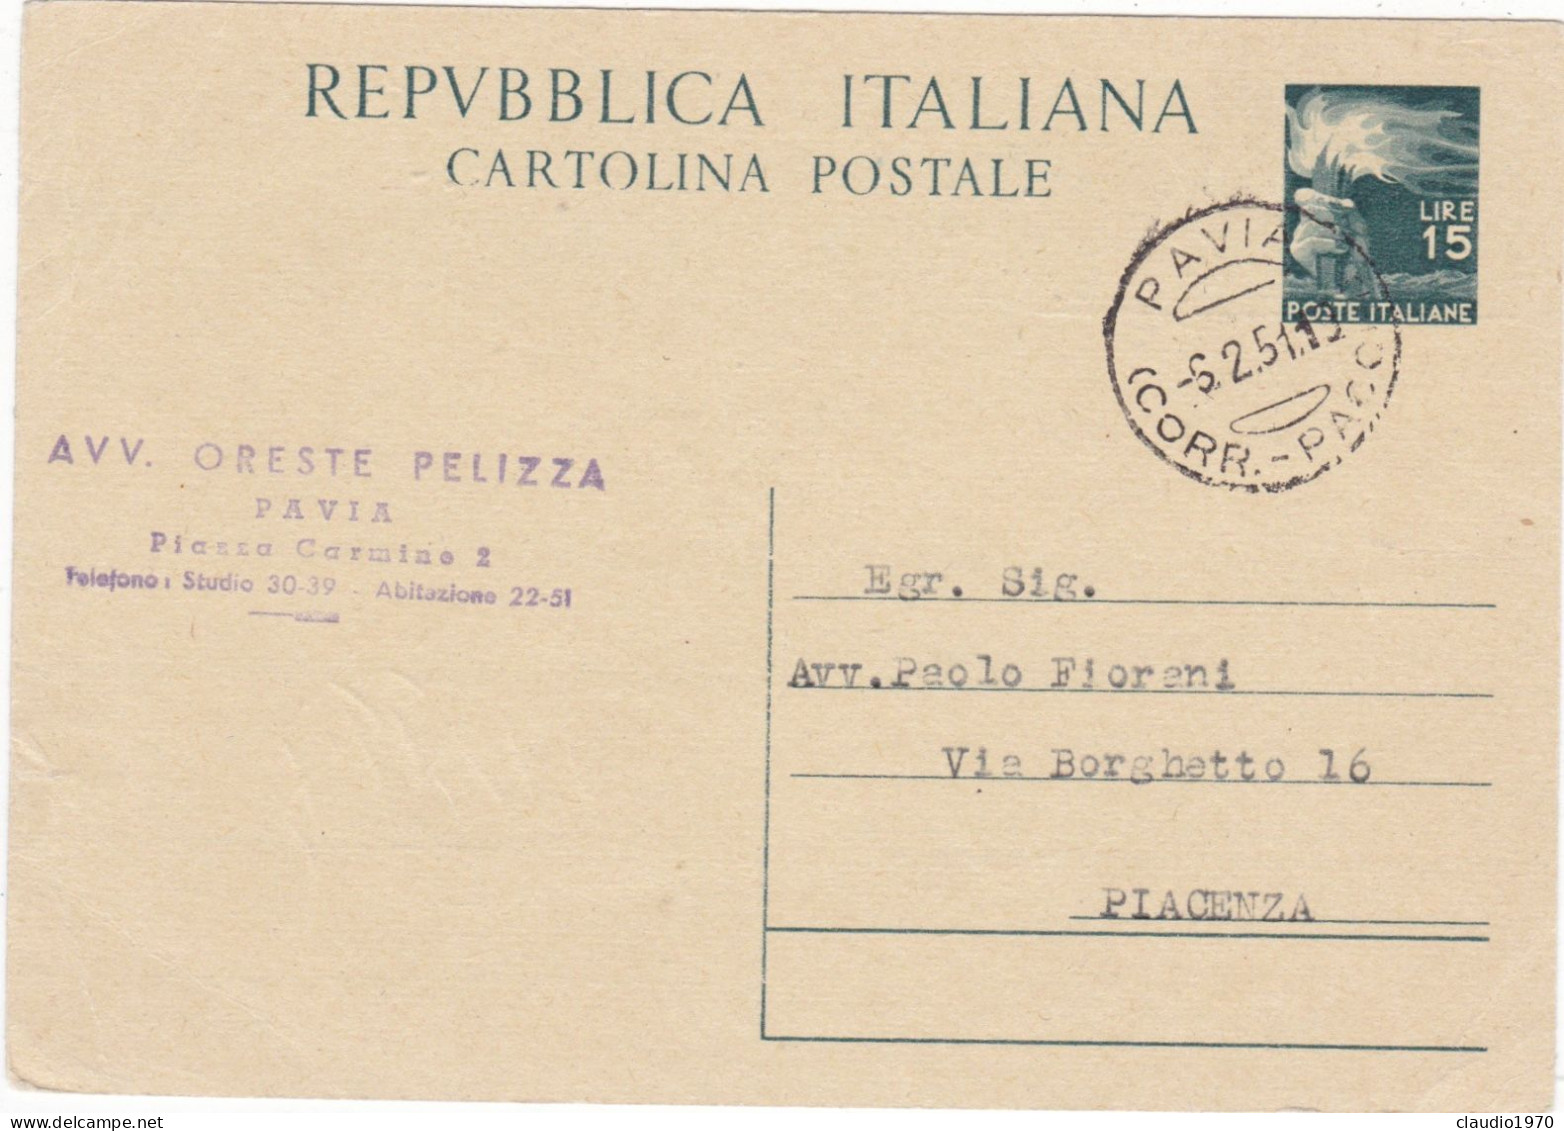 ITALIA - REPUBBLICA  - PAVIA - CARTOLINA POSTALE  -  AVV. - VIAGGIATA PER PICENZA - 1951 - Stamped Stationery